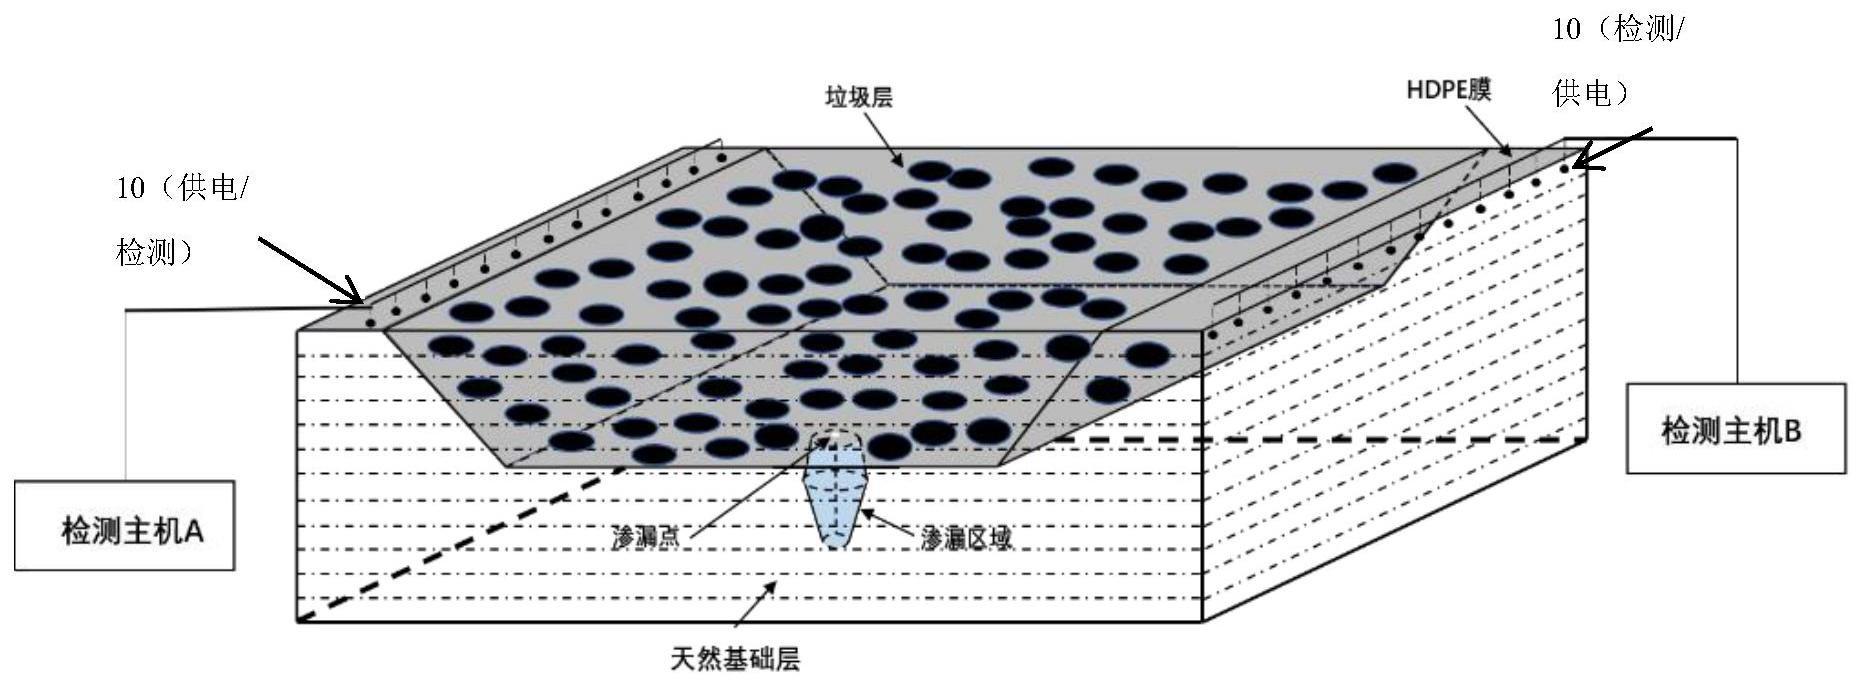 利用填埋场场外电极定位HDPE膜渗漏位置的方法、装置